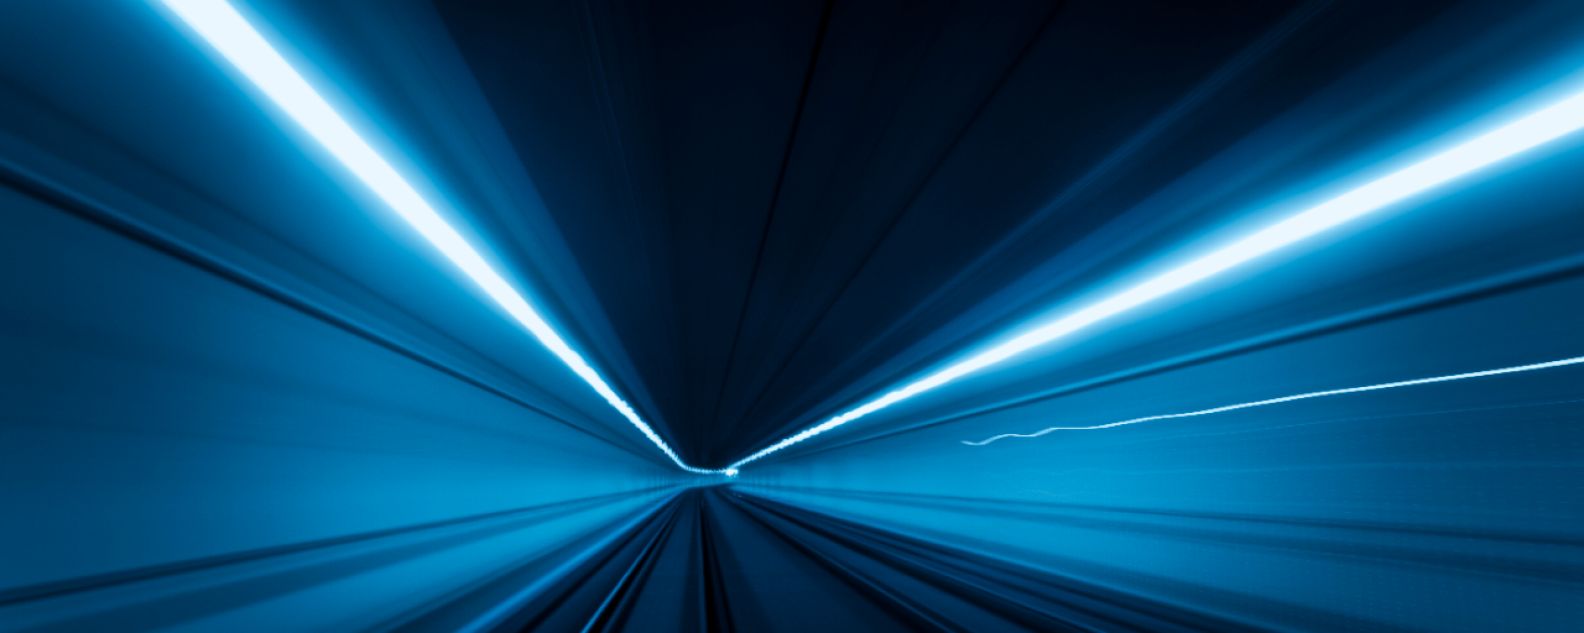 터널을 빠른 속도로 지나는 빛의 흔적